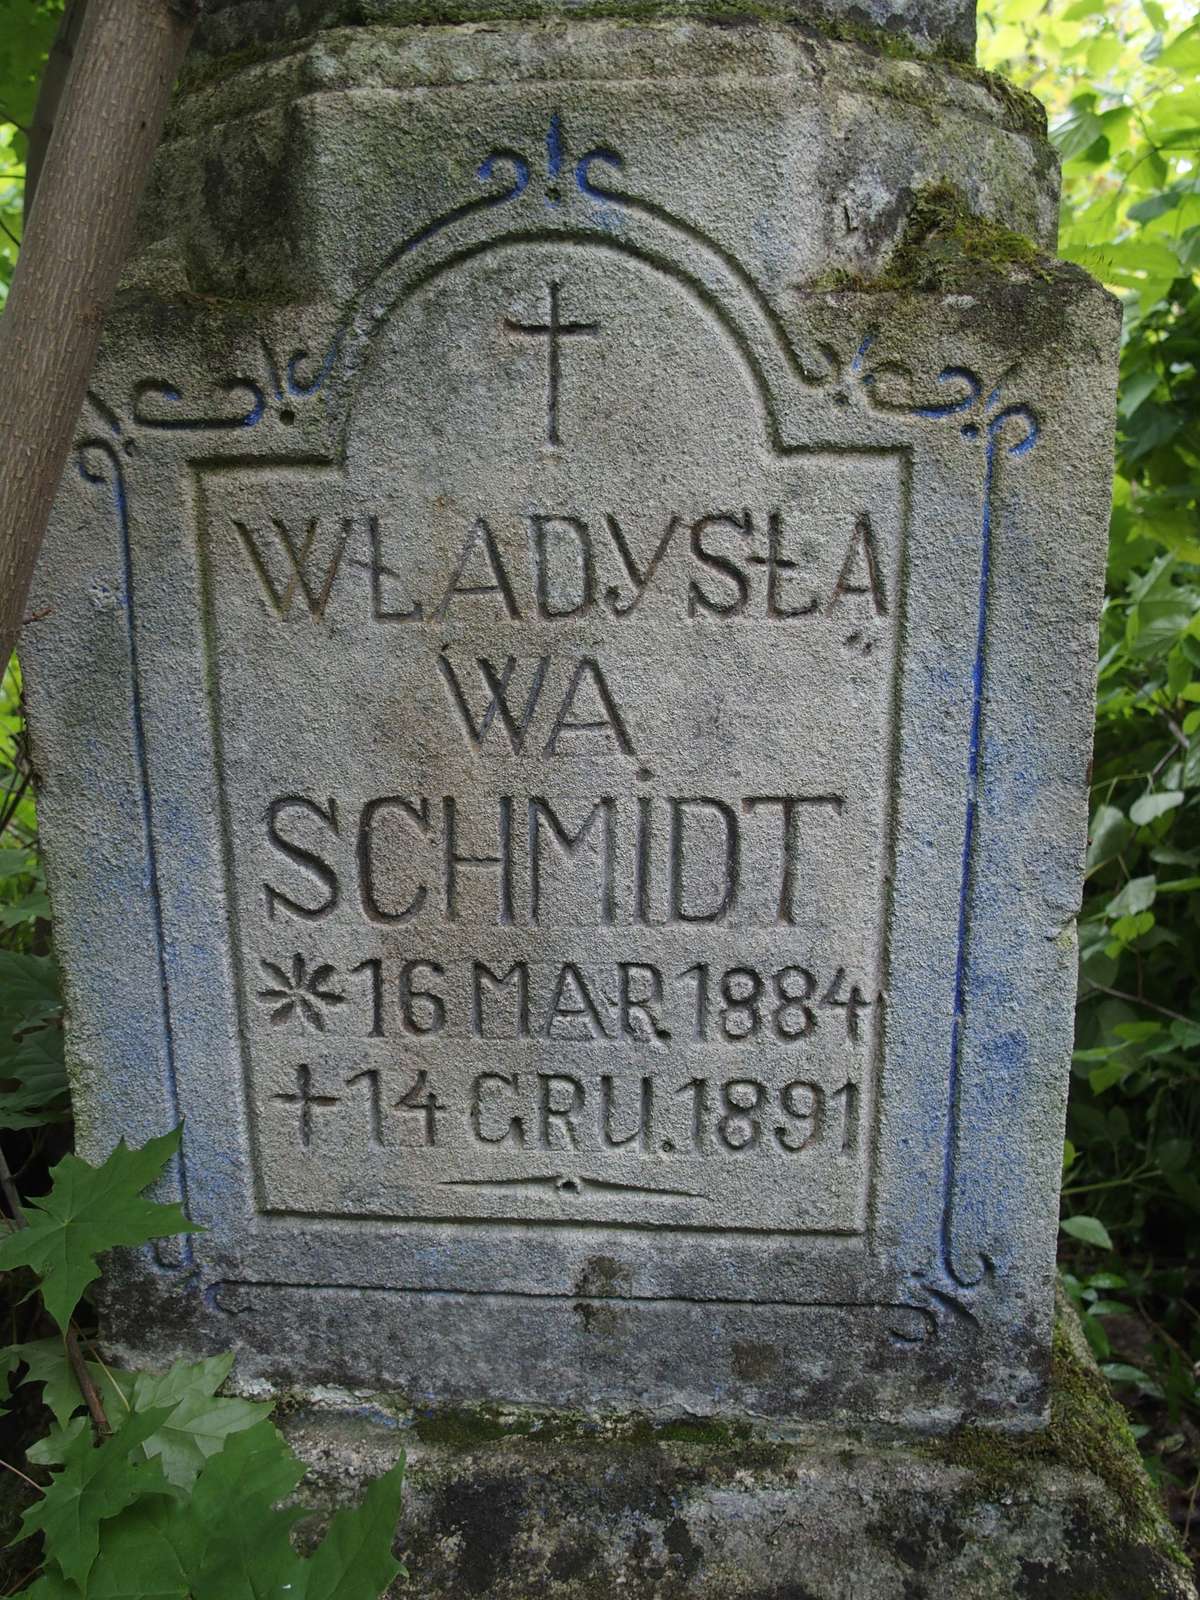 Inskrypcja z nagrobka Władysławy Schmidt, cmentarz w Dobrowodach, 2019